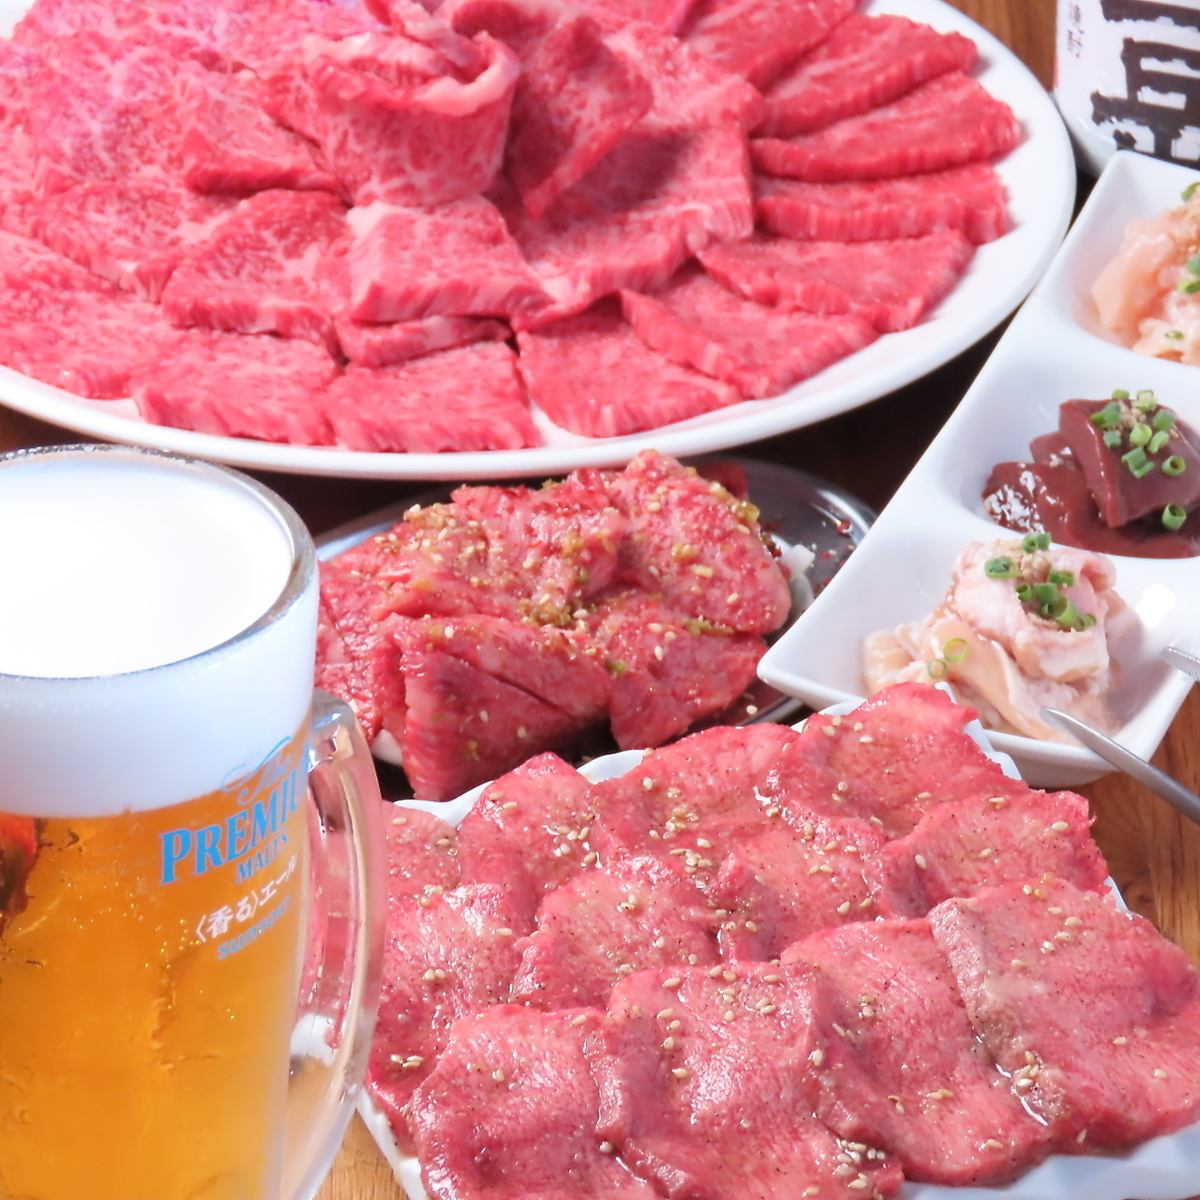 您可以以合理的价格享用优质肉和熟成肉。